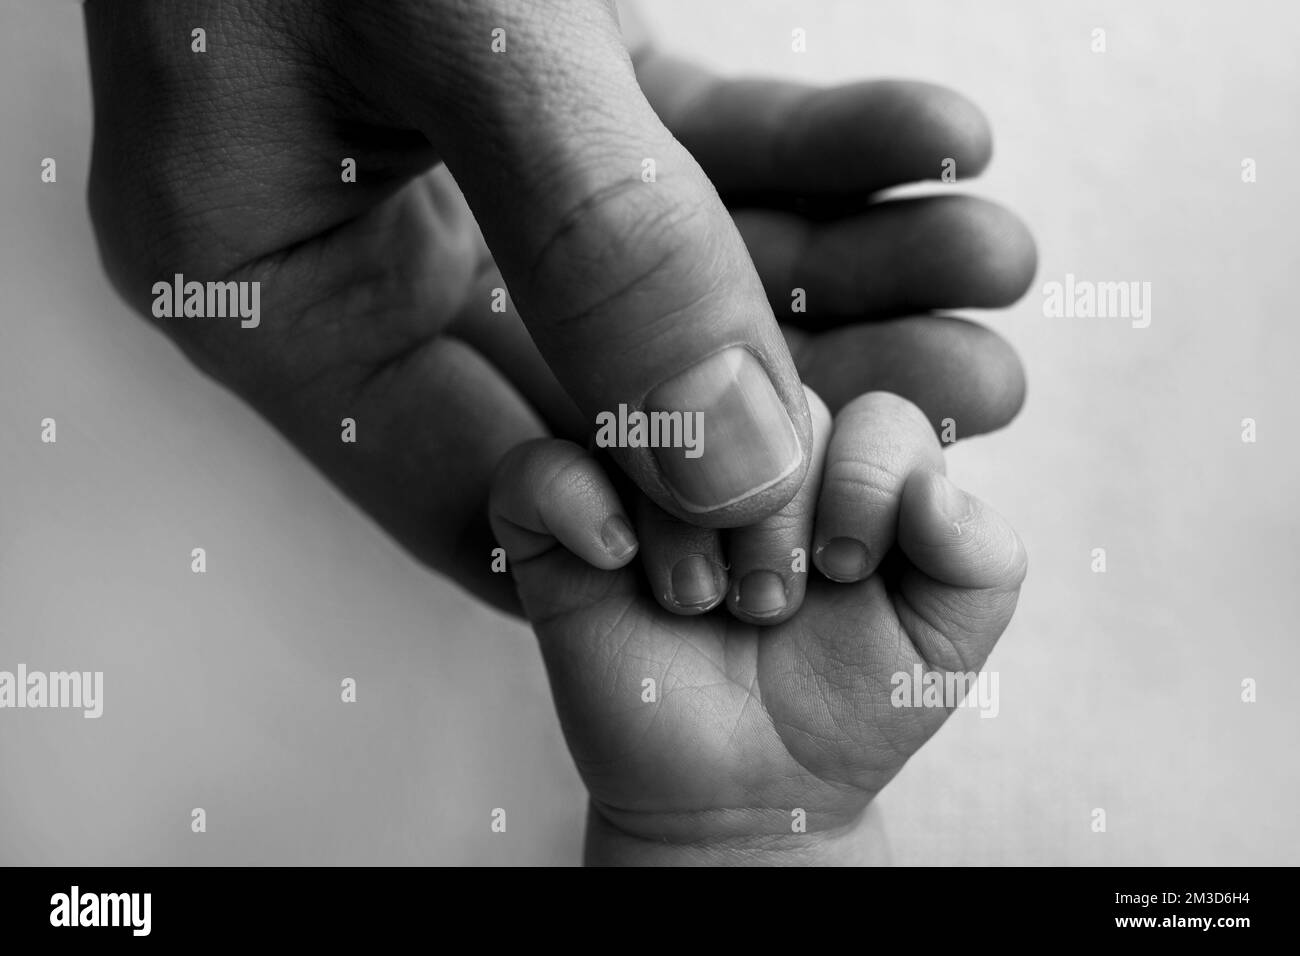 Padre sosteniendo los dedos del bebé recién nacido. Mano de un bebé recién nacido. Foto de stock